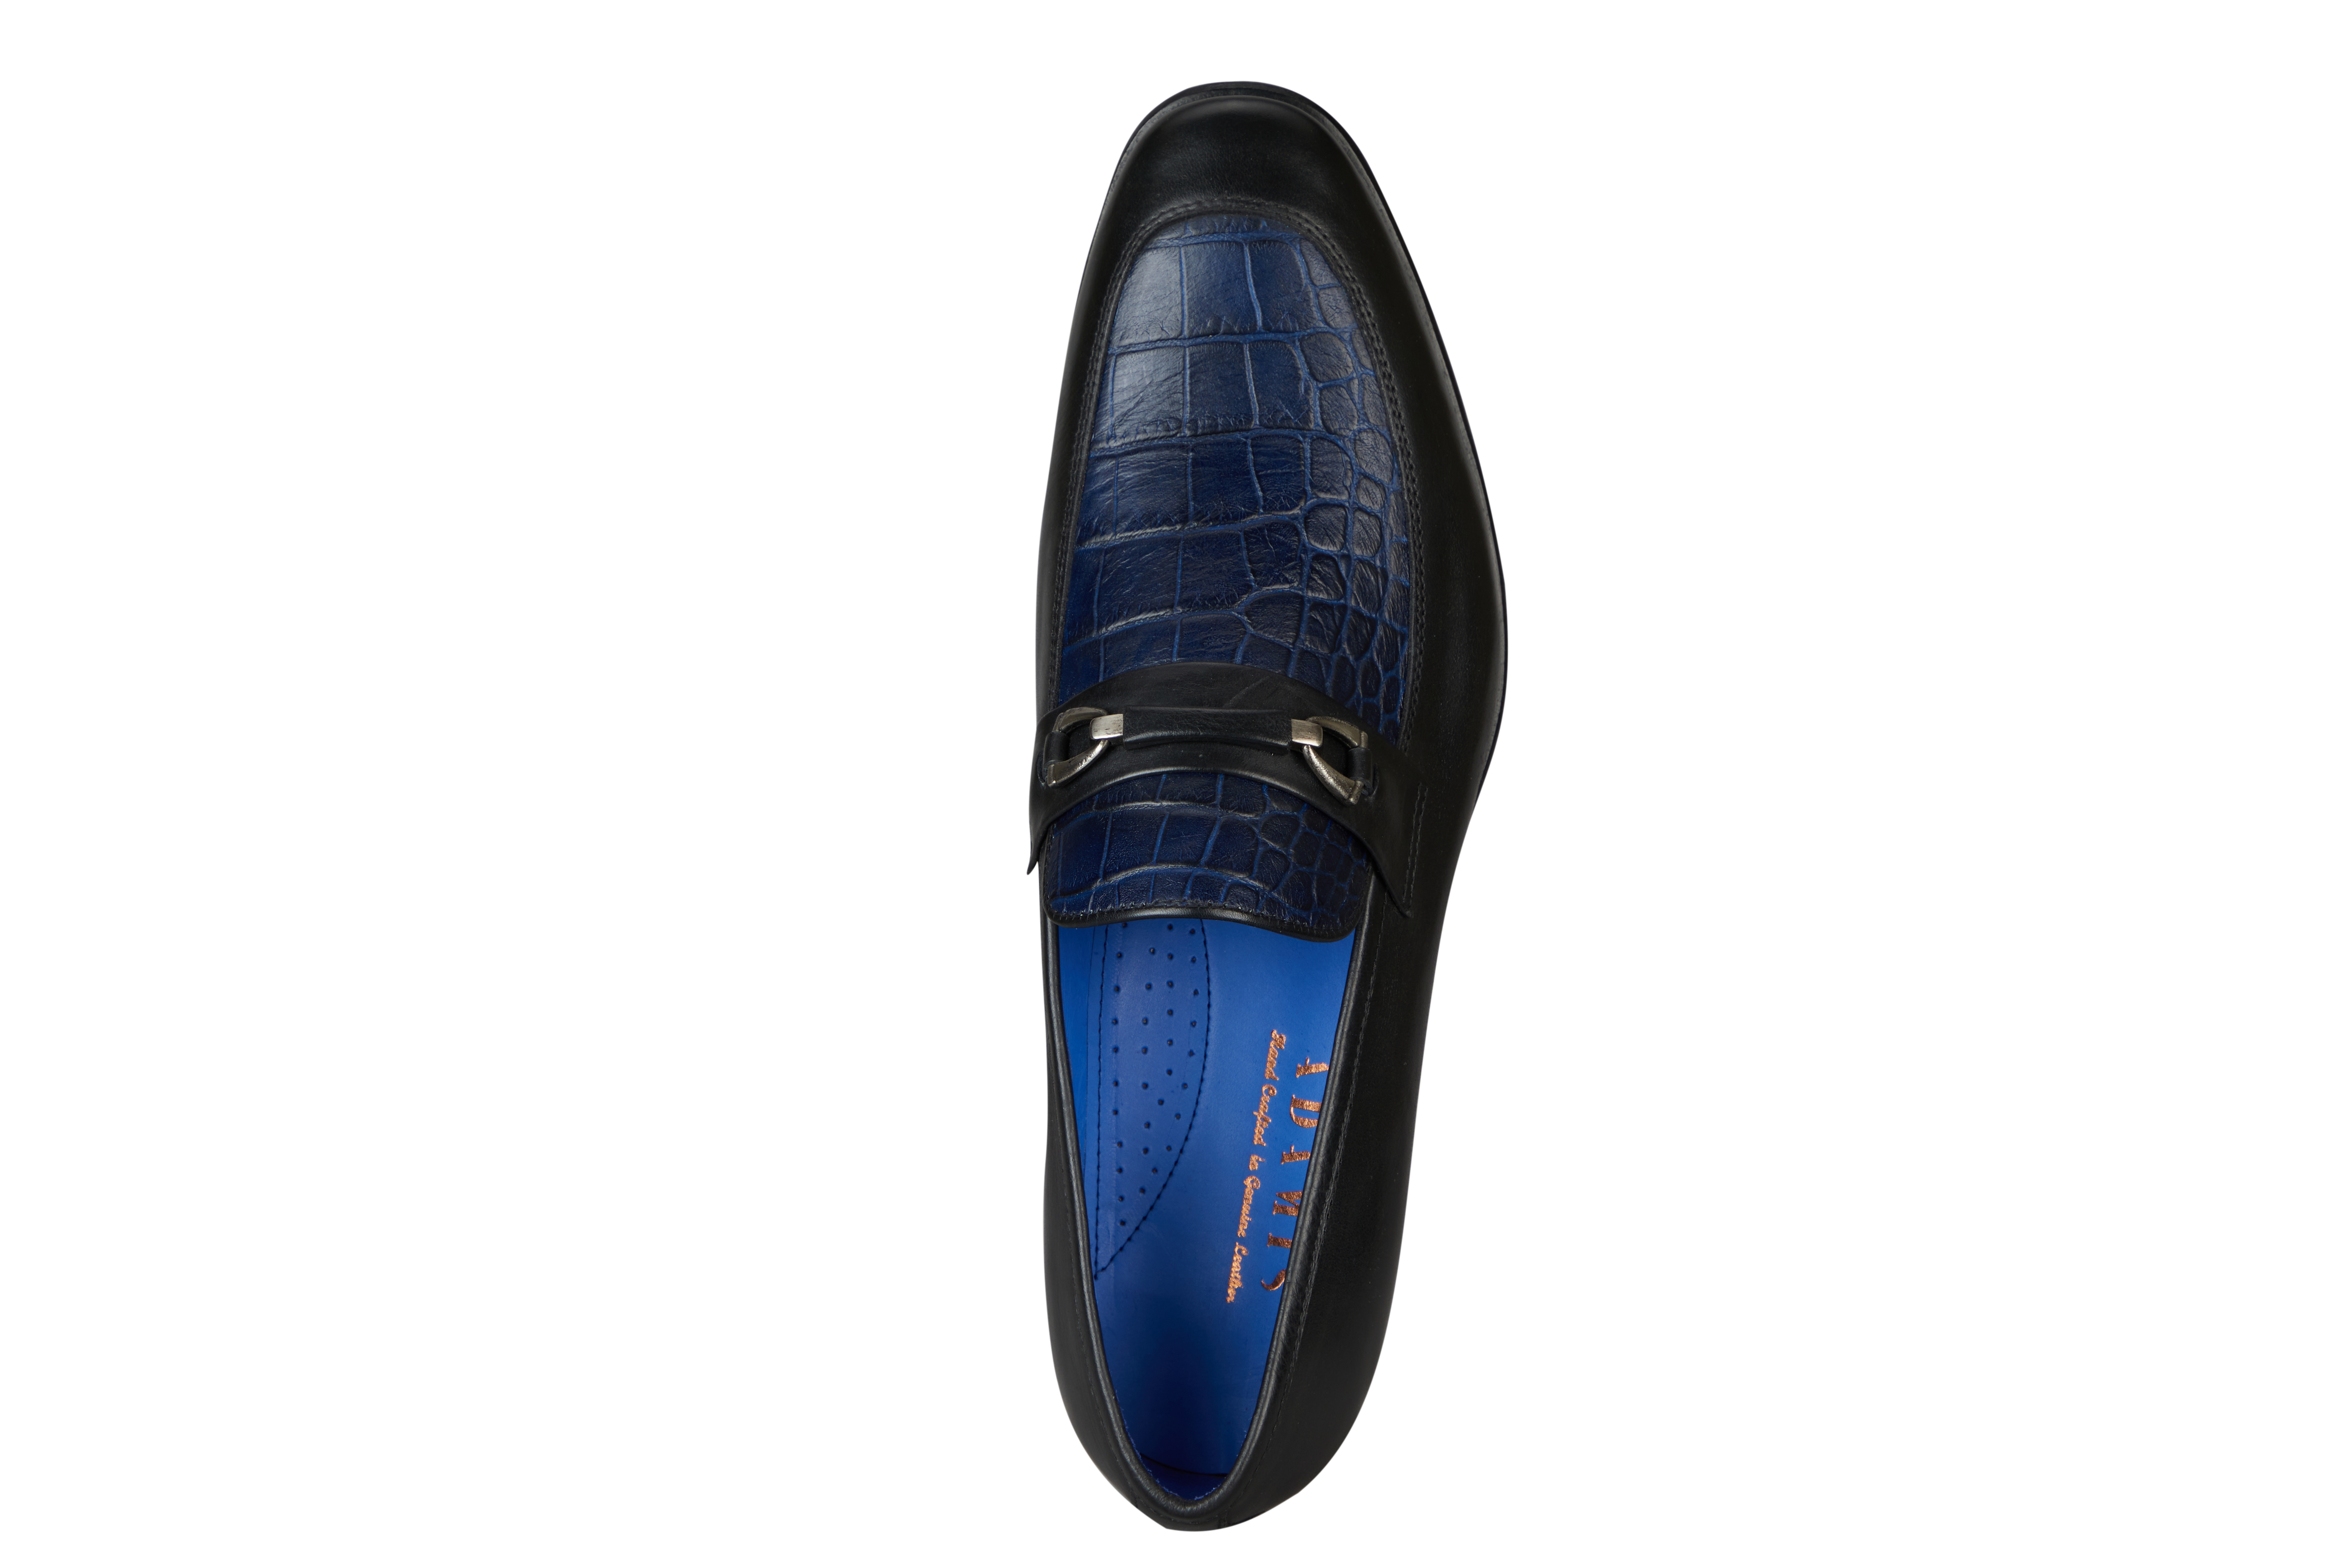 Footwear-Adamis Pure Leather Footwear For Men- - Black/Blue